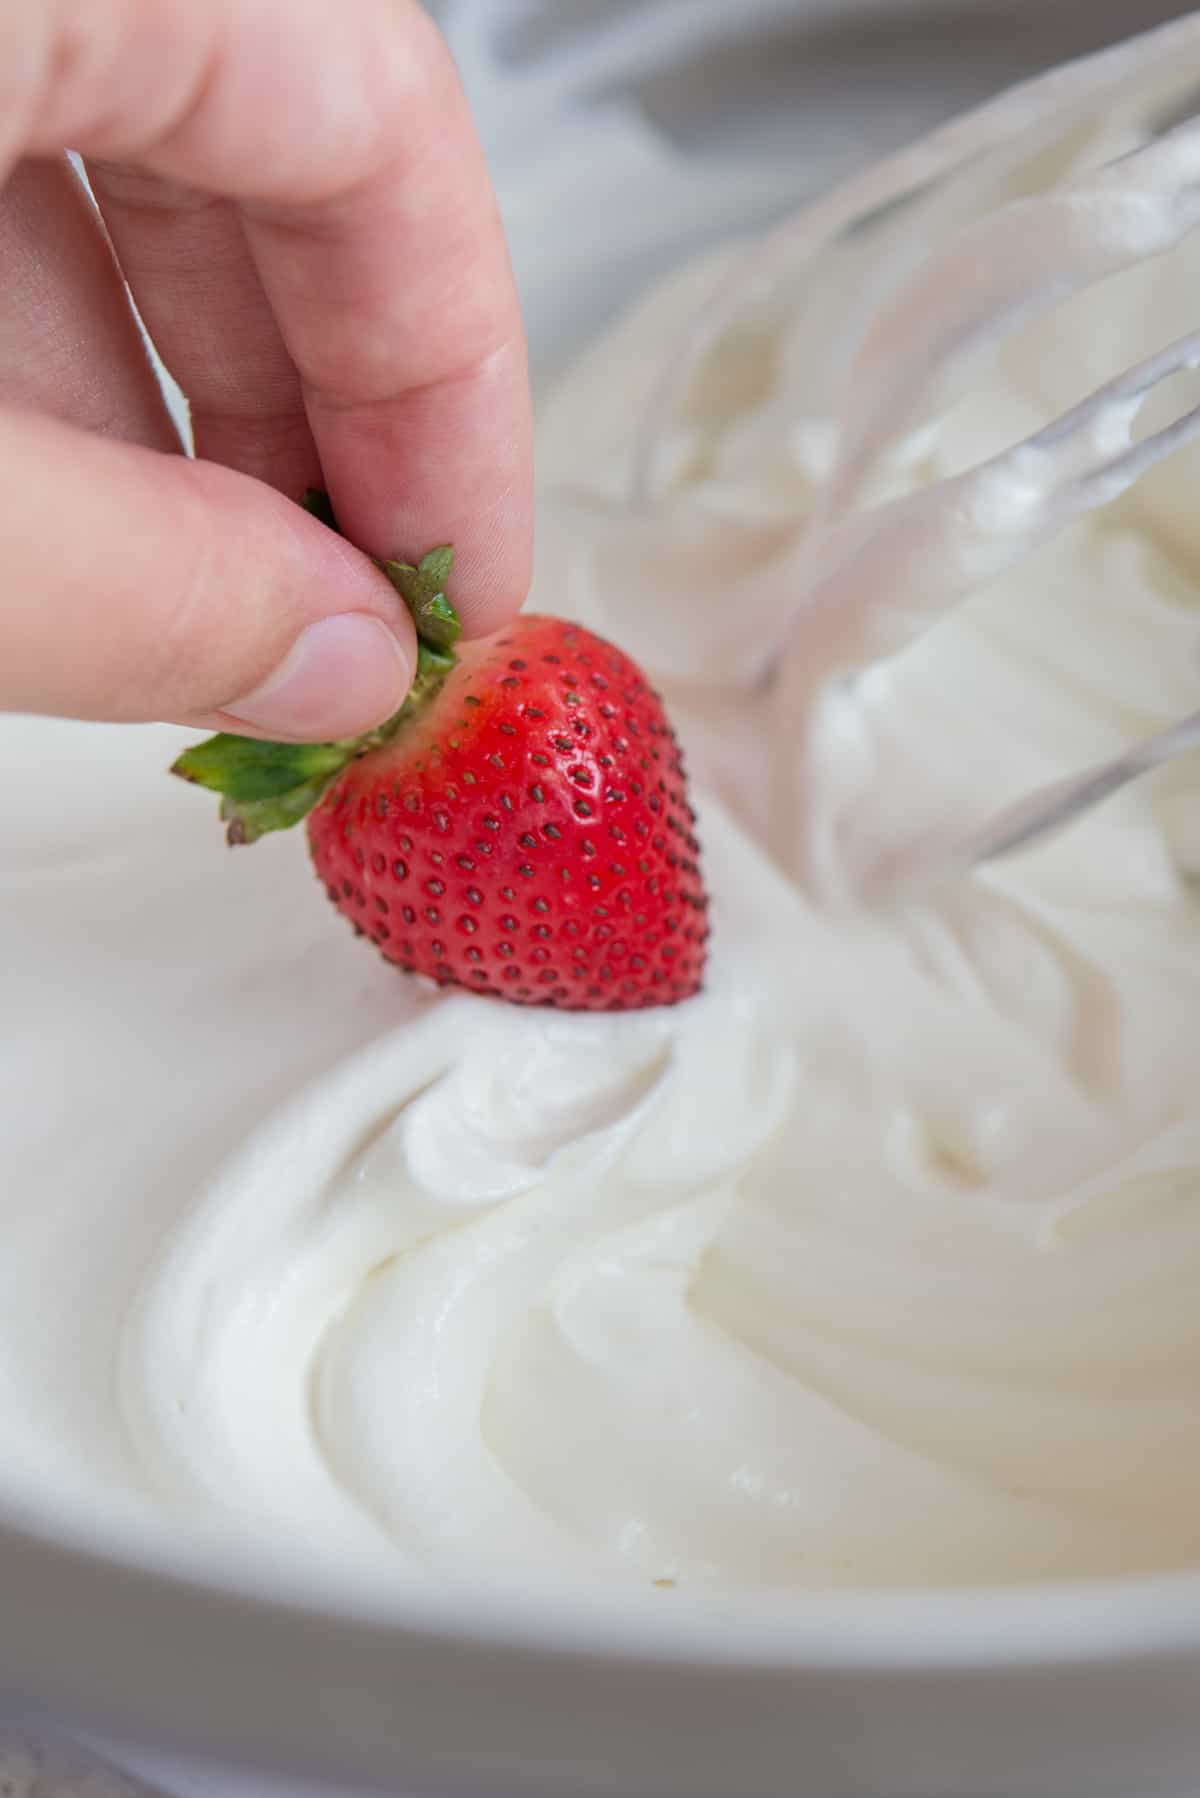 How to Make Whipped Cream